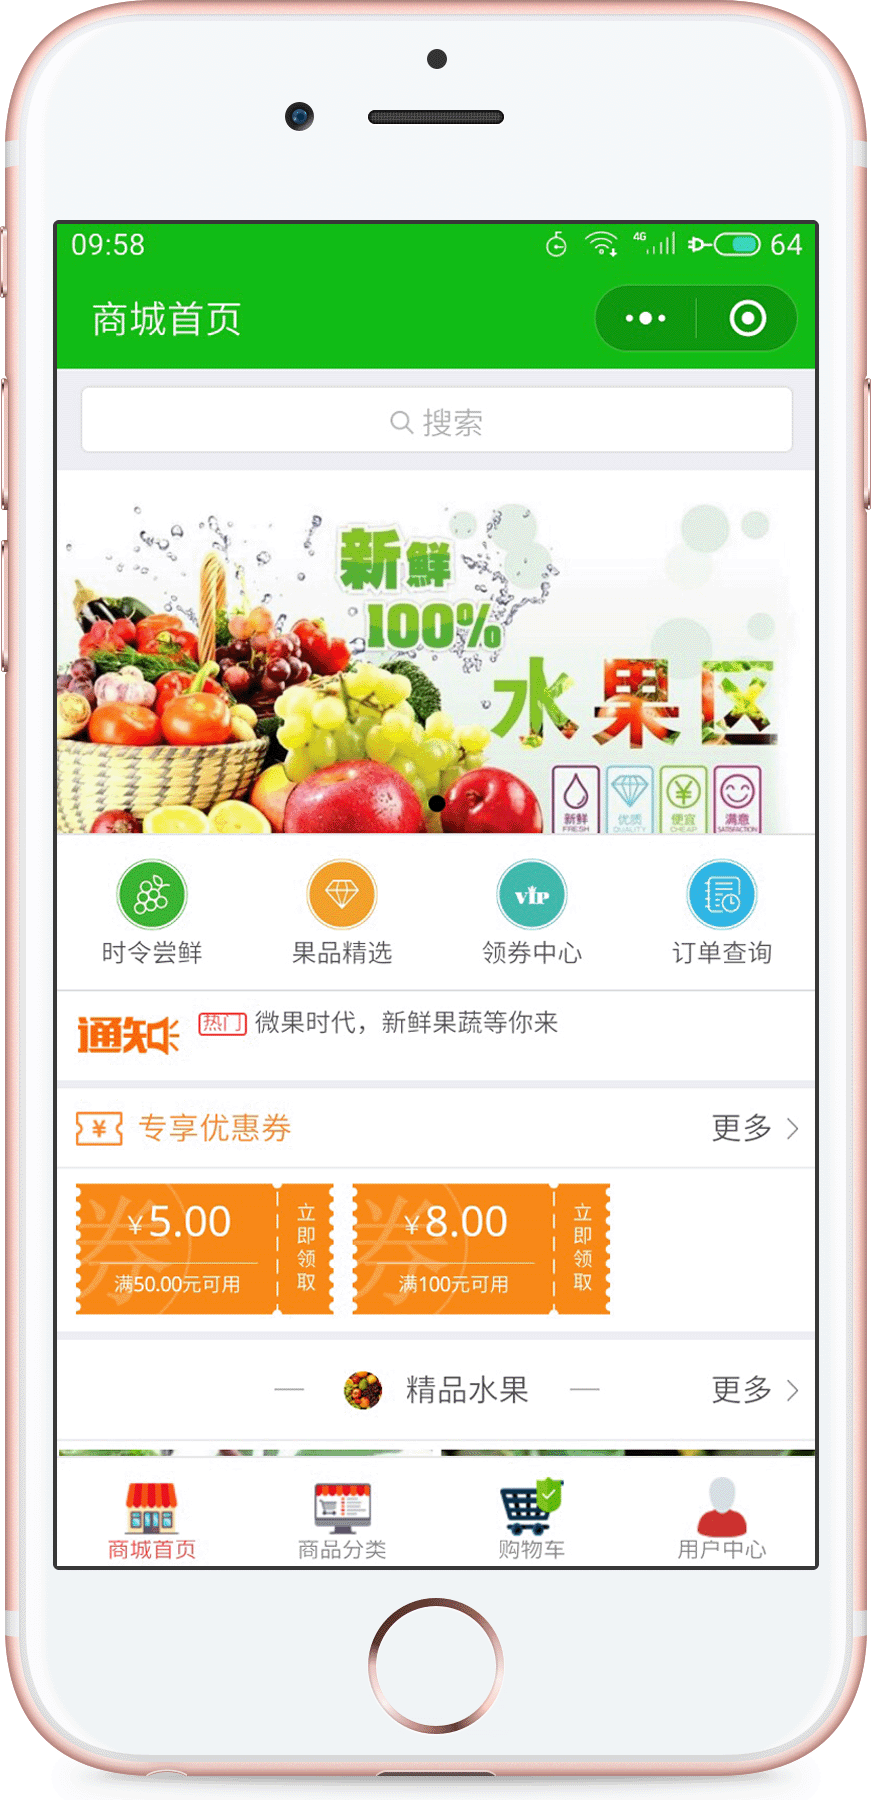 上海微果时代案例展示最低价